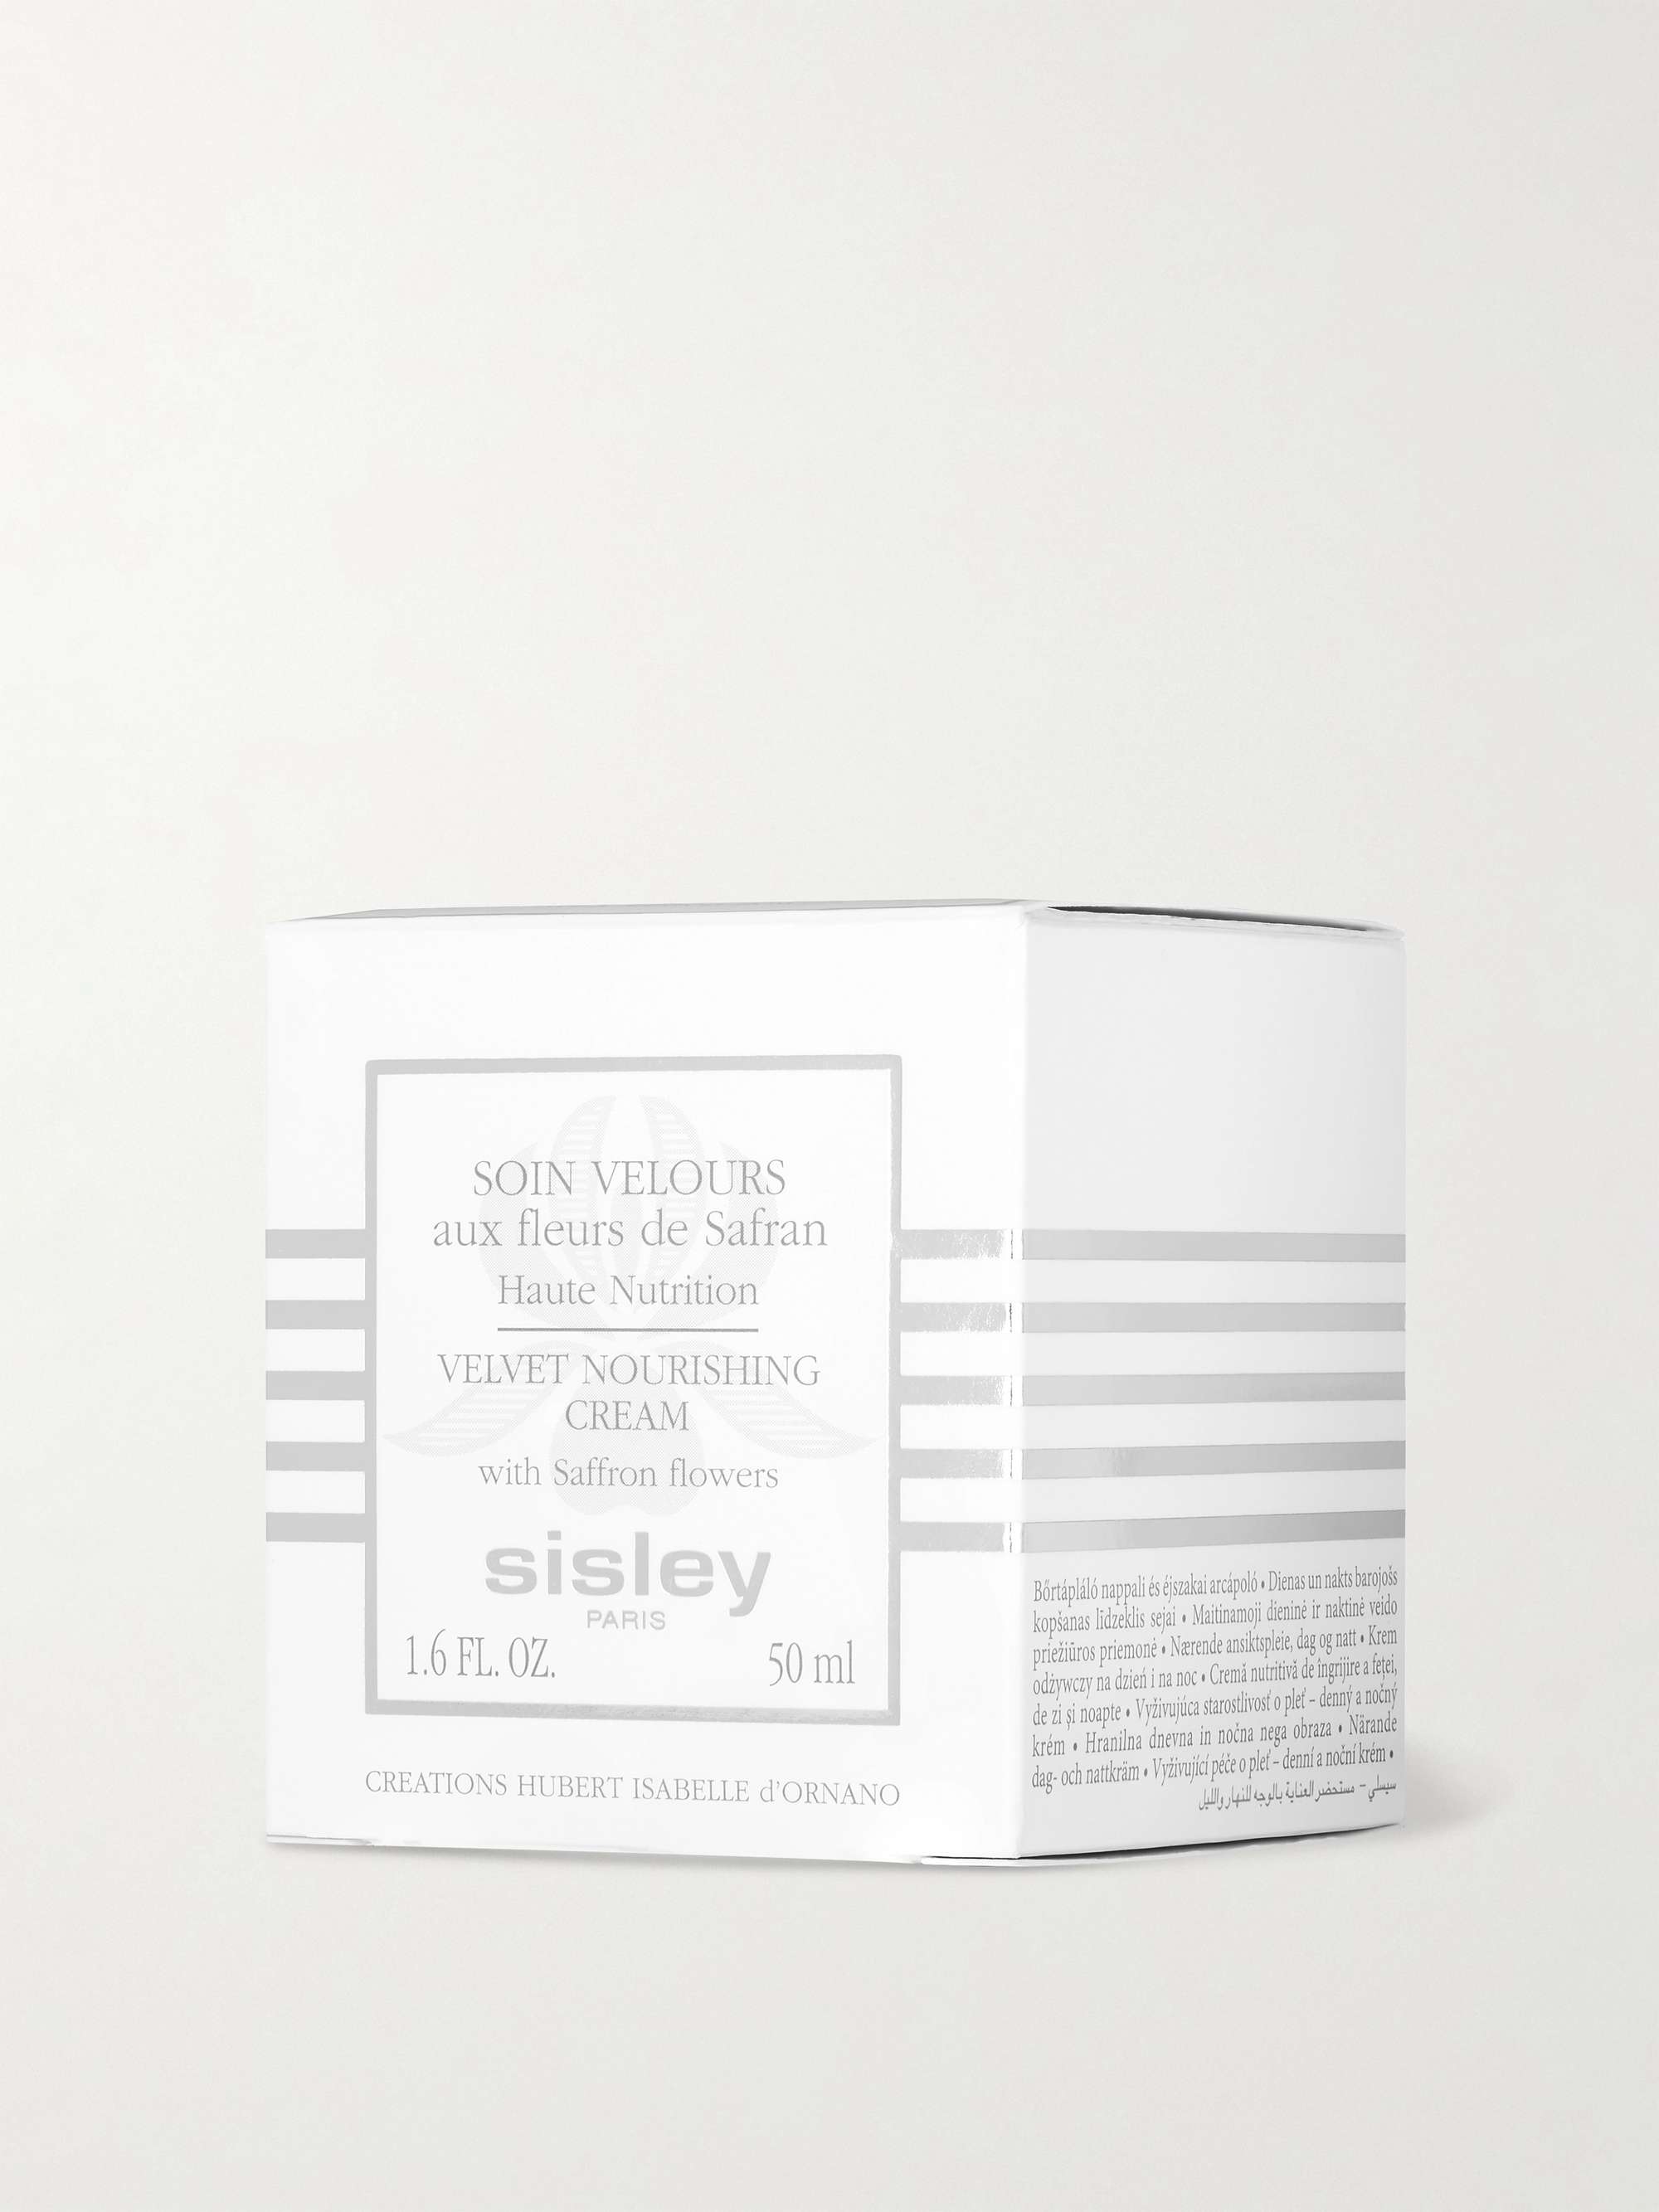 SISLEY Velvet Nourishing Cream, 50ml